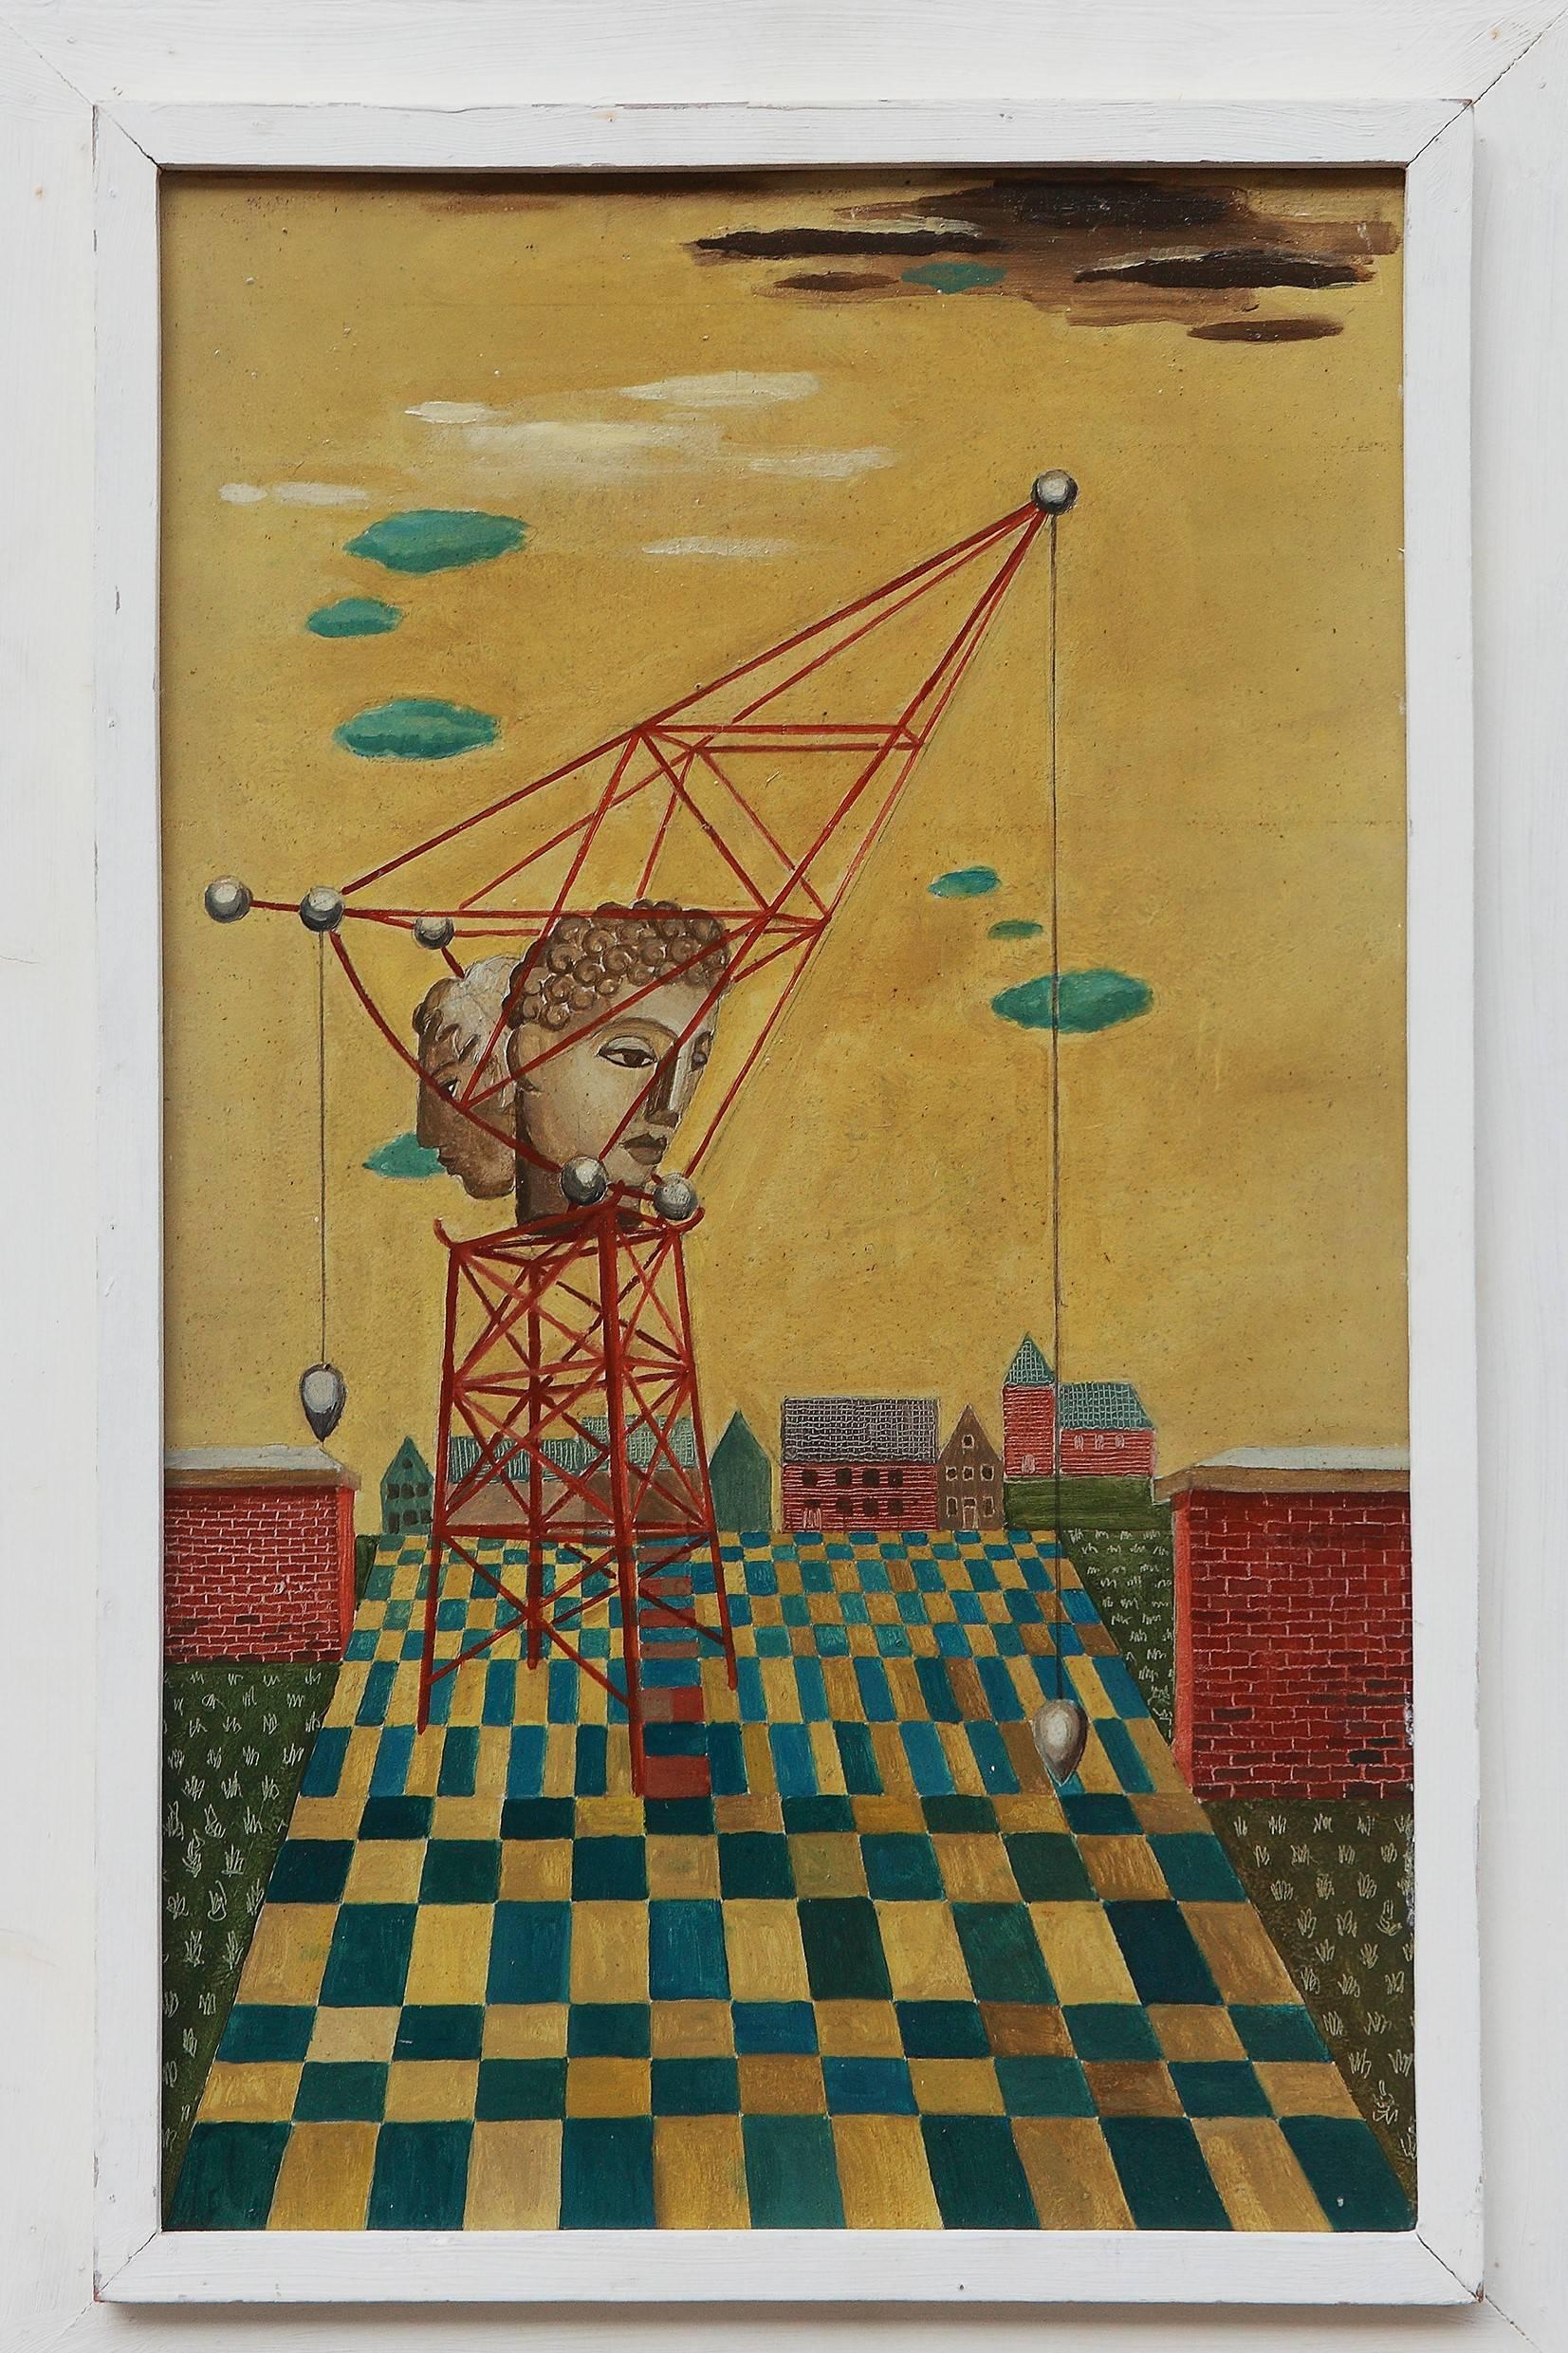 Öl auf Hartfaserplatte, 1963, von Heinz Borchers ( 1898-1972 ), Deutschland. Gerahmt. 25.59 x 15.55 in ( 65 x 39,5 cm )
Provenienz: Nachlass des Künstlers

